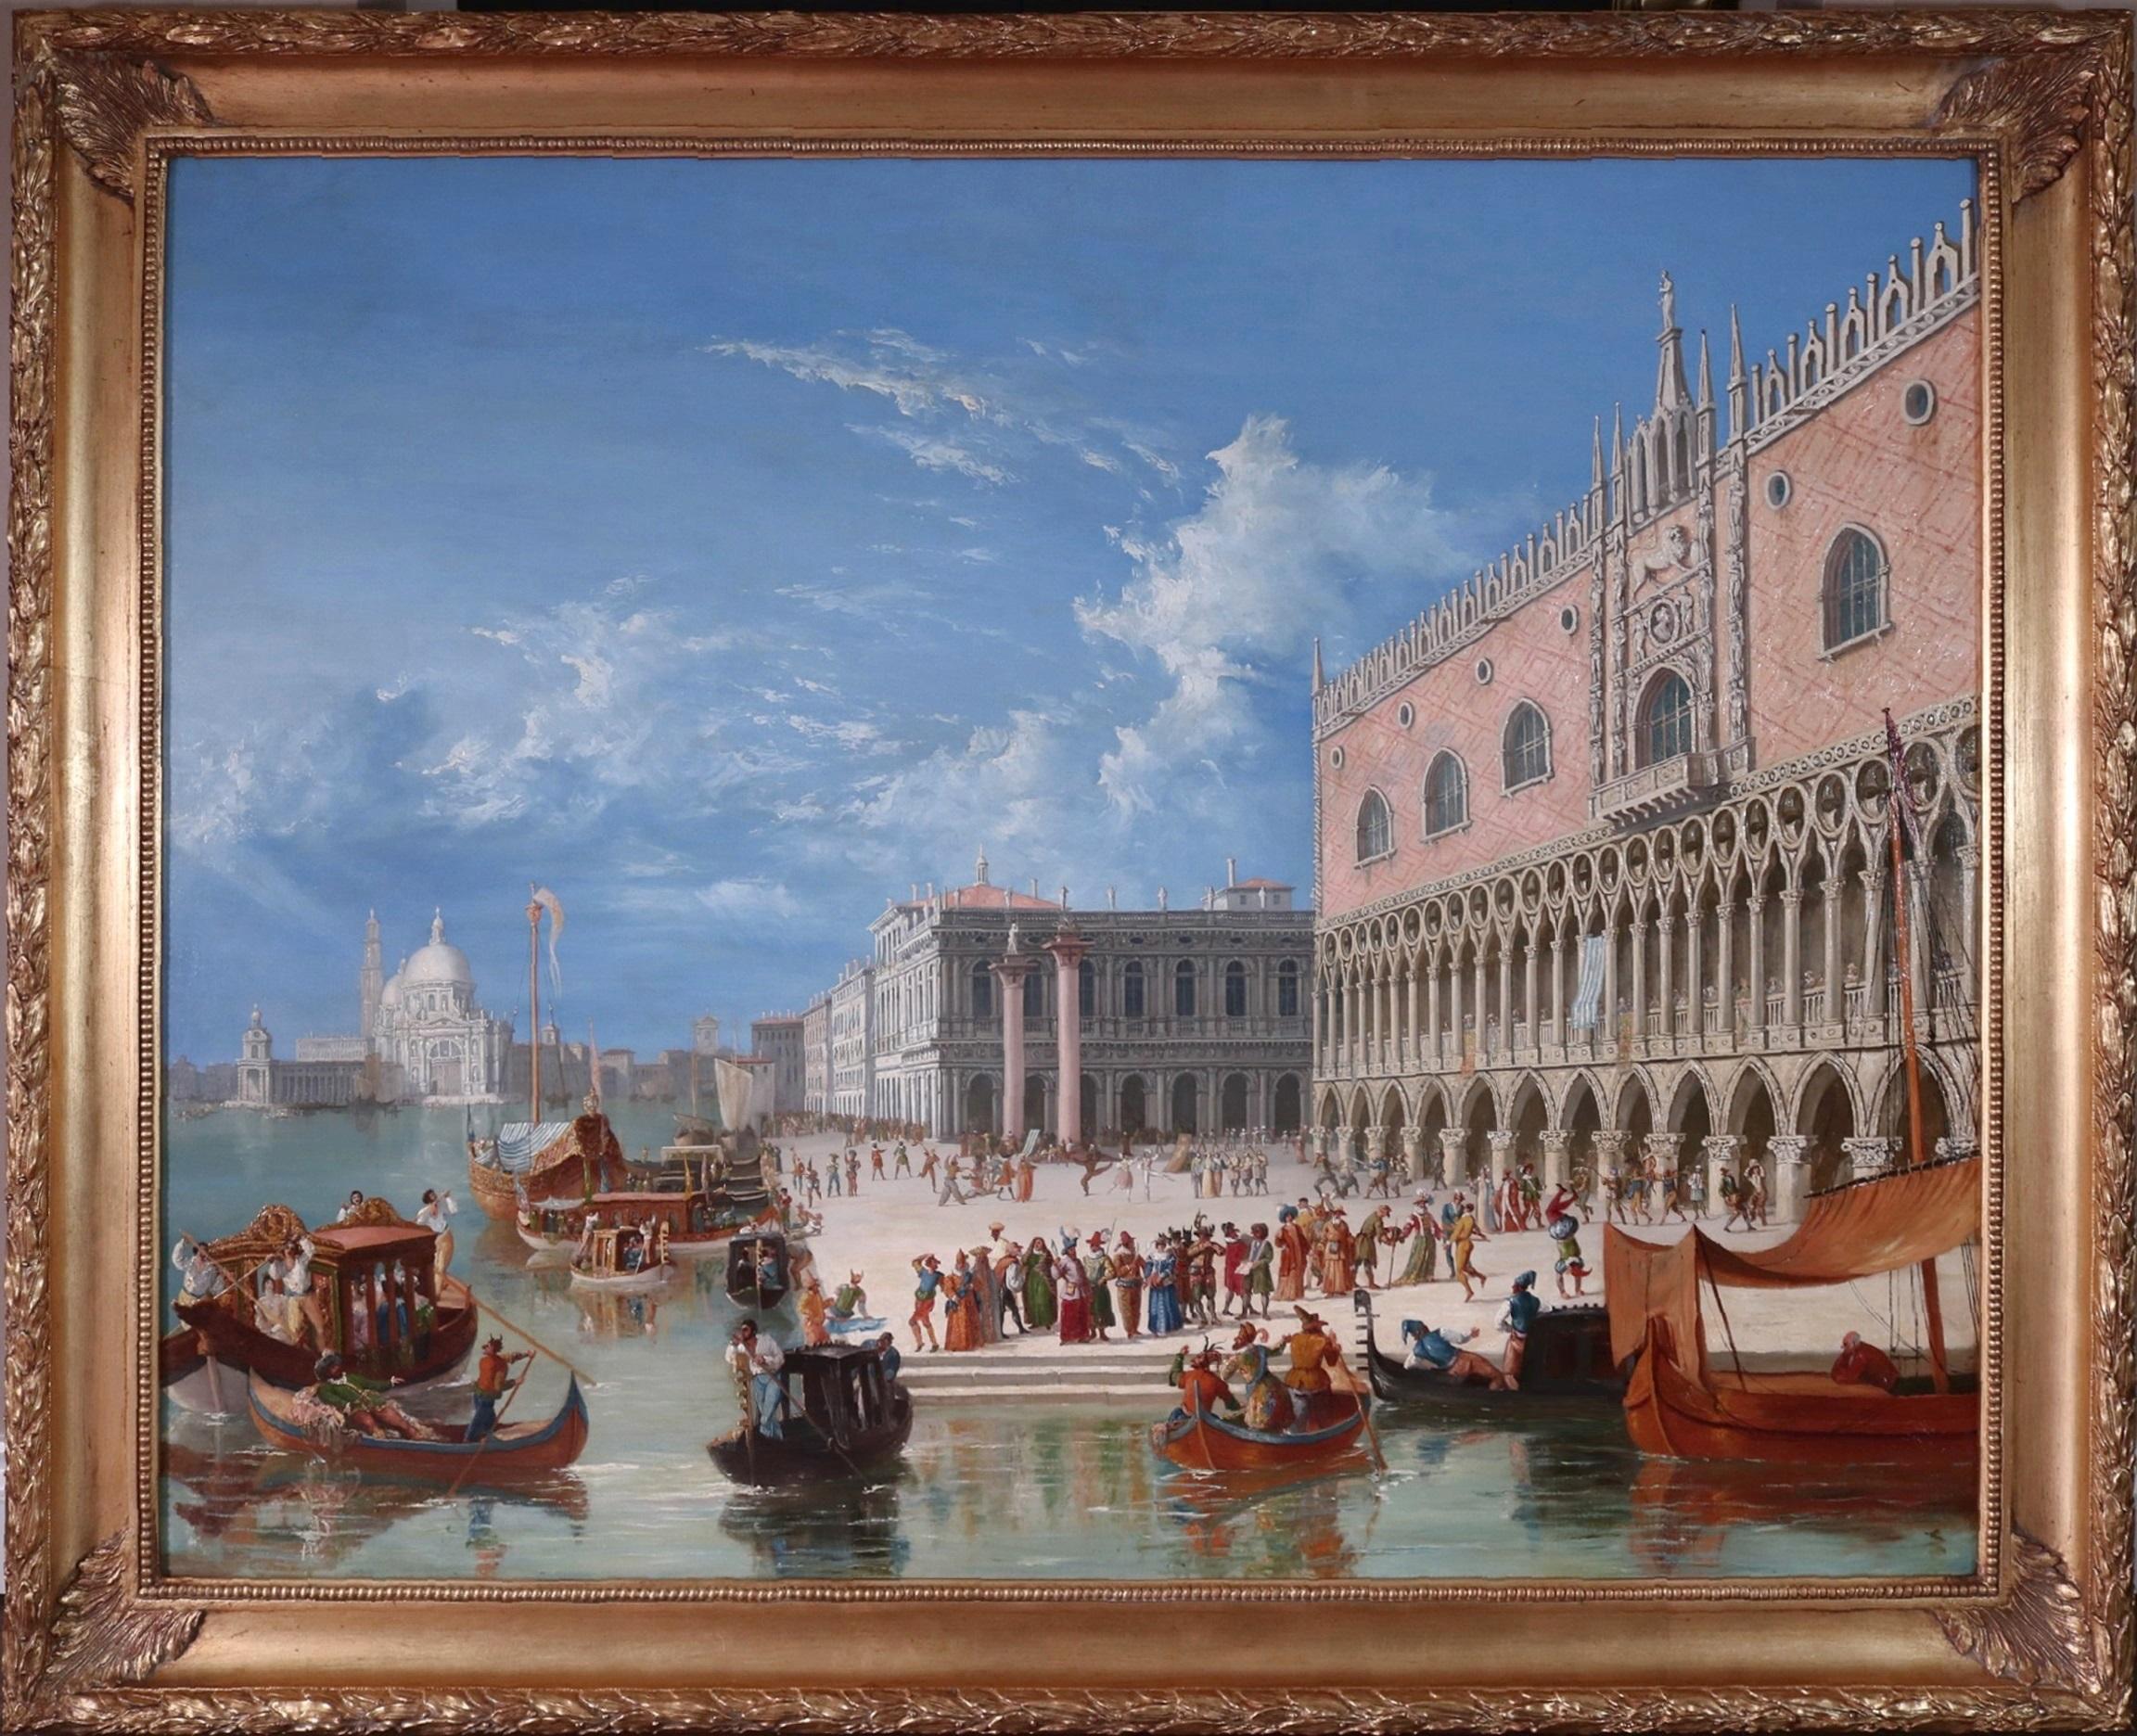 Carnevale di Venezia - Grande peinture à l'huile du 19e siècle représentant le carnaval de Venise, Italie - Painting de James Holland